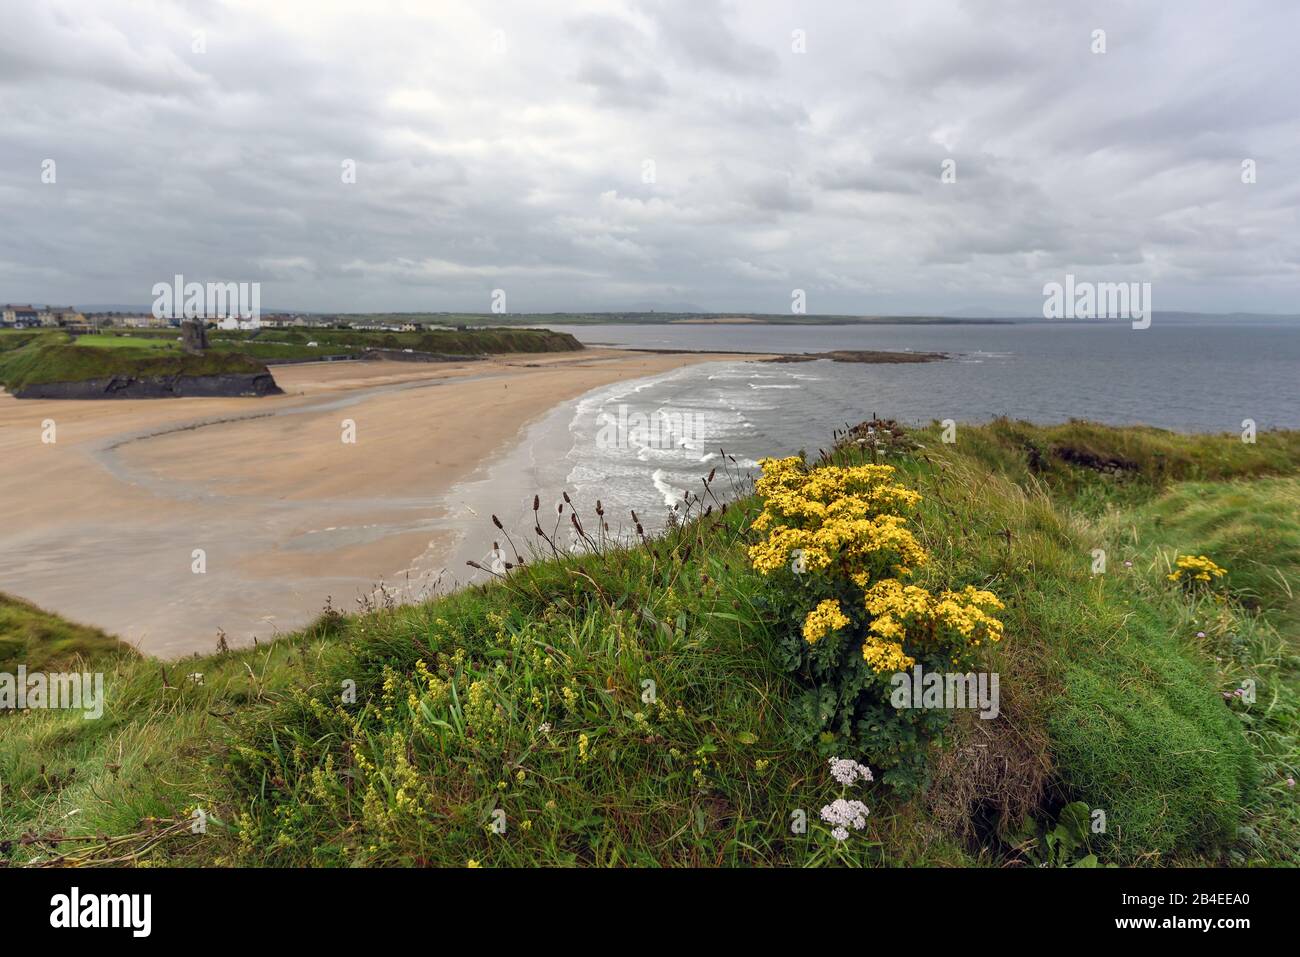 Irlanda, Kerry, Ballybunnion, vista en la bahía desierta de la playa en verano en la costa atlántica salvaje de Irlanda, enmarcada por rocas verdes y flores amarillas en el primer plano Foto de stock